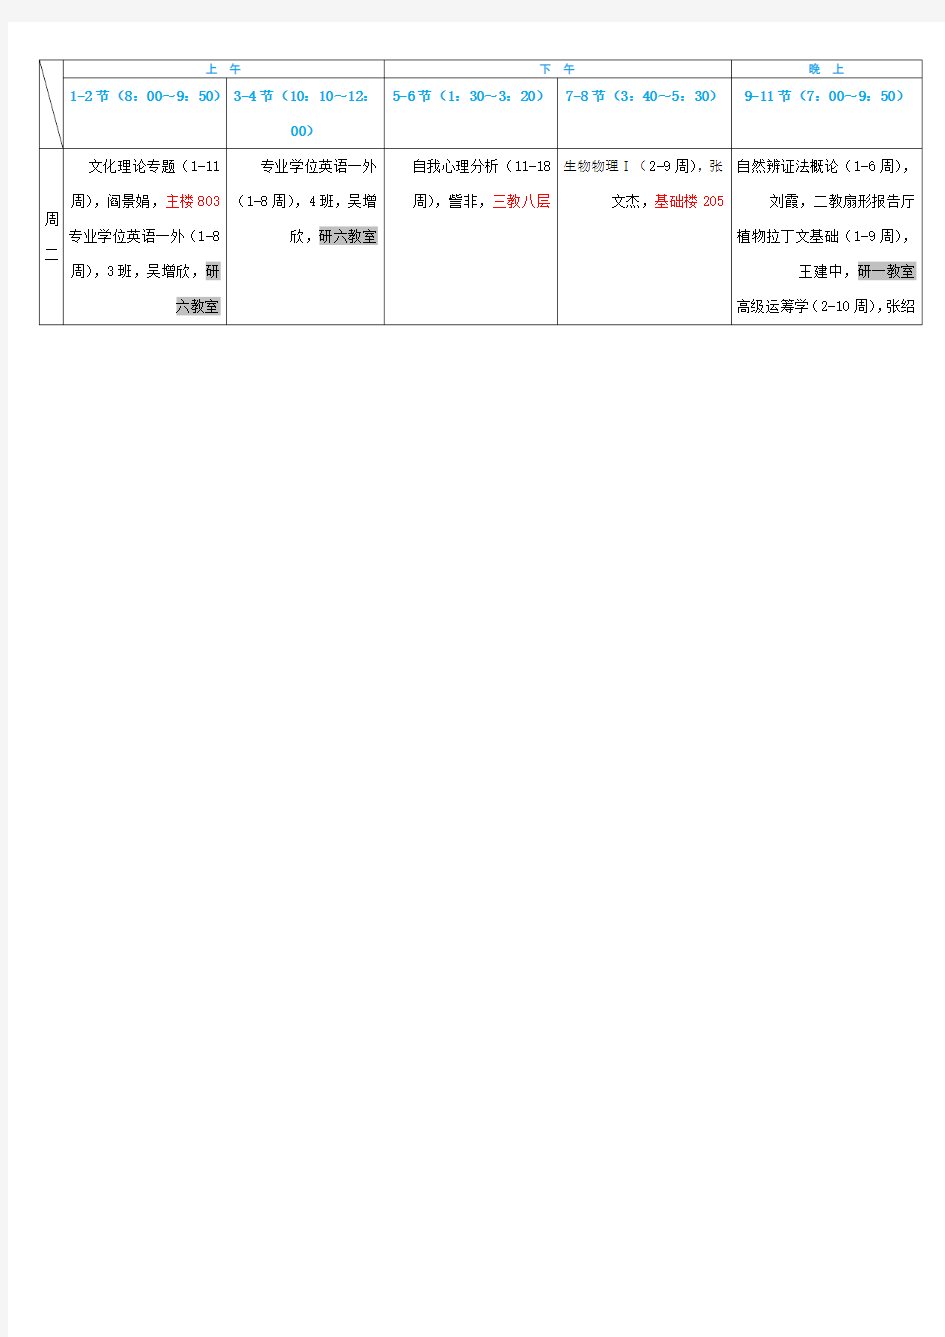 北京林业大学春季研究生课程表